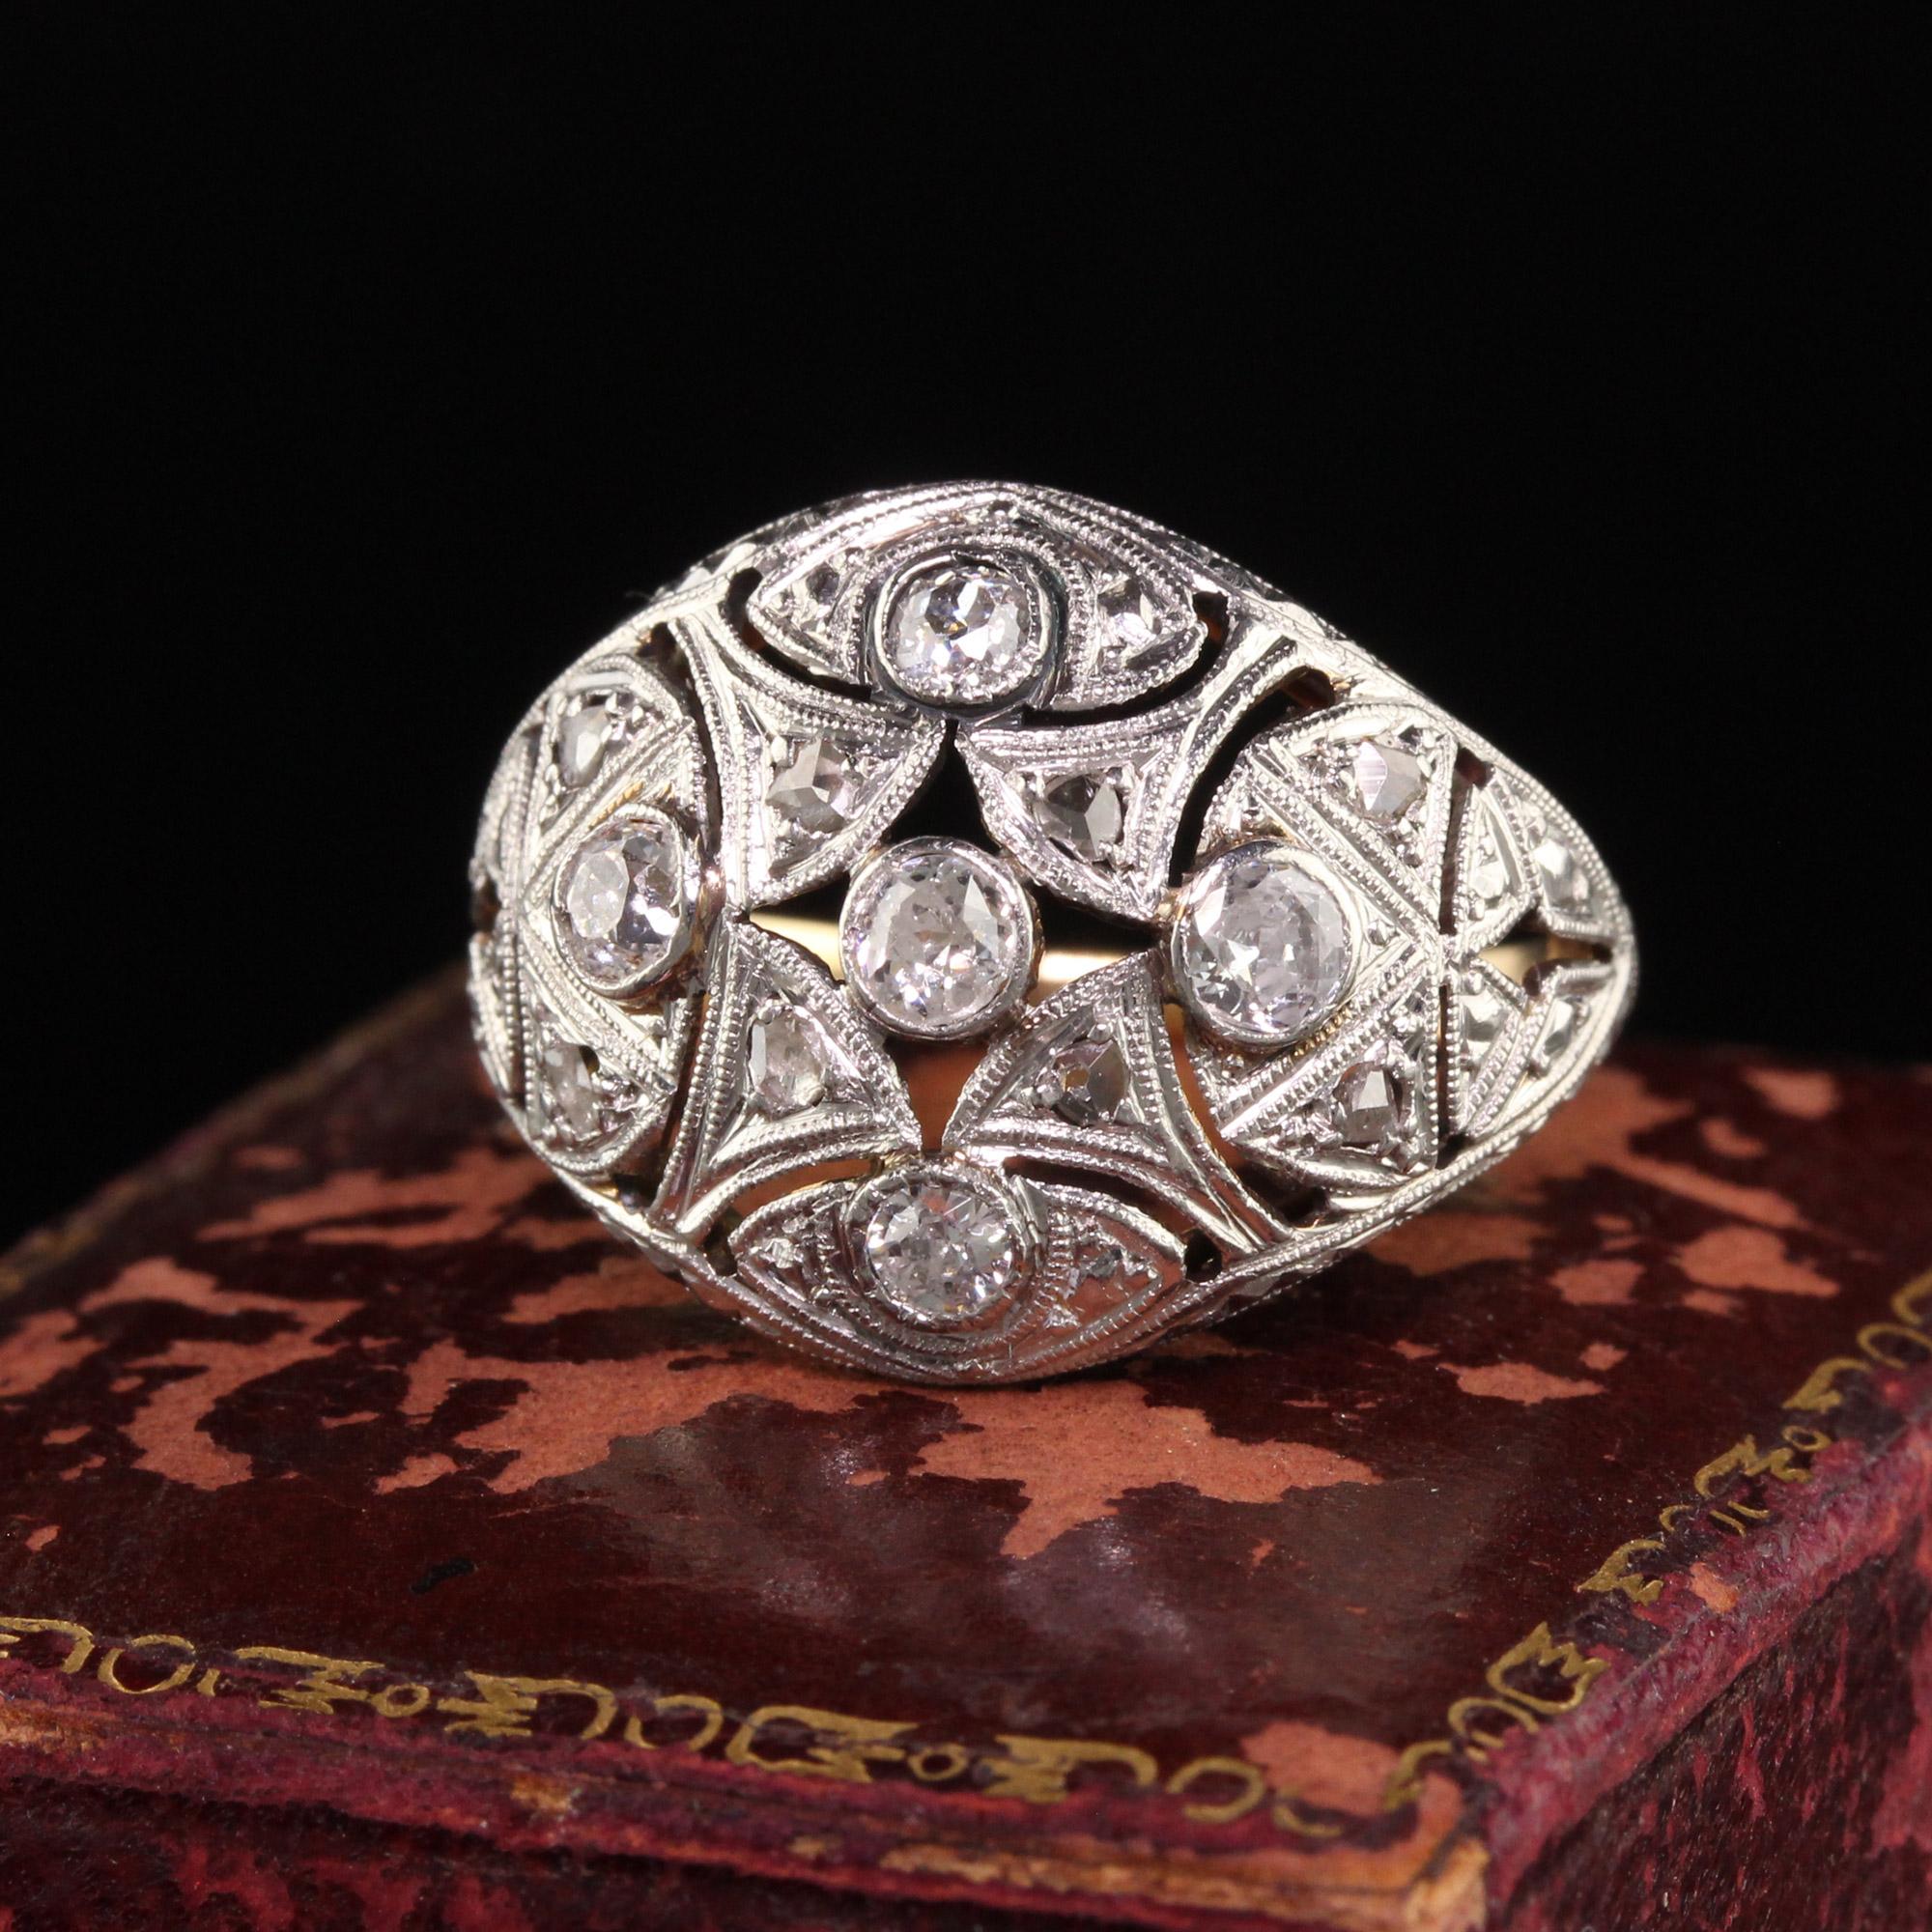 Schöne antike Edwardian 18K Gelbgold Platin Top Old European Diamond Ring. Dieser schöne Ring ist in 18 Karat Gelbgold und Platin oben gefertigt. Die Fassung ist mit Diamanten im alten europäischen Schliff und im Rosenschliff besetzt und befindet